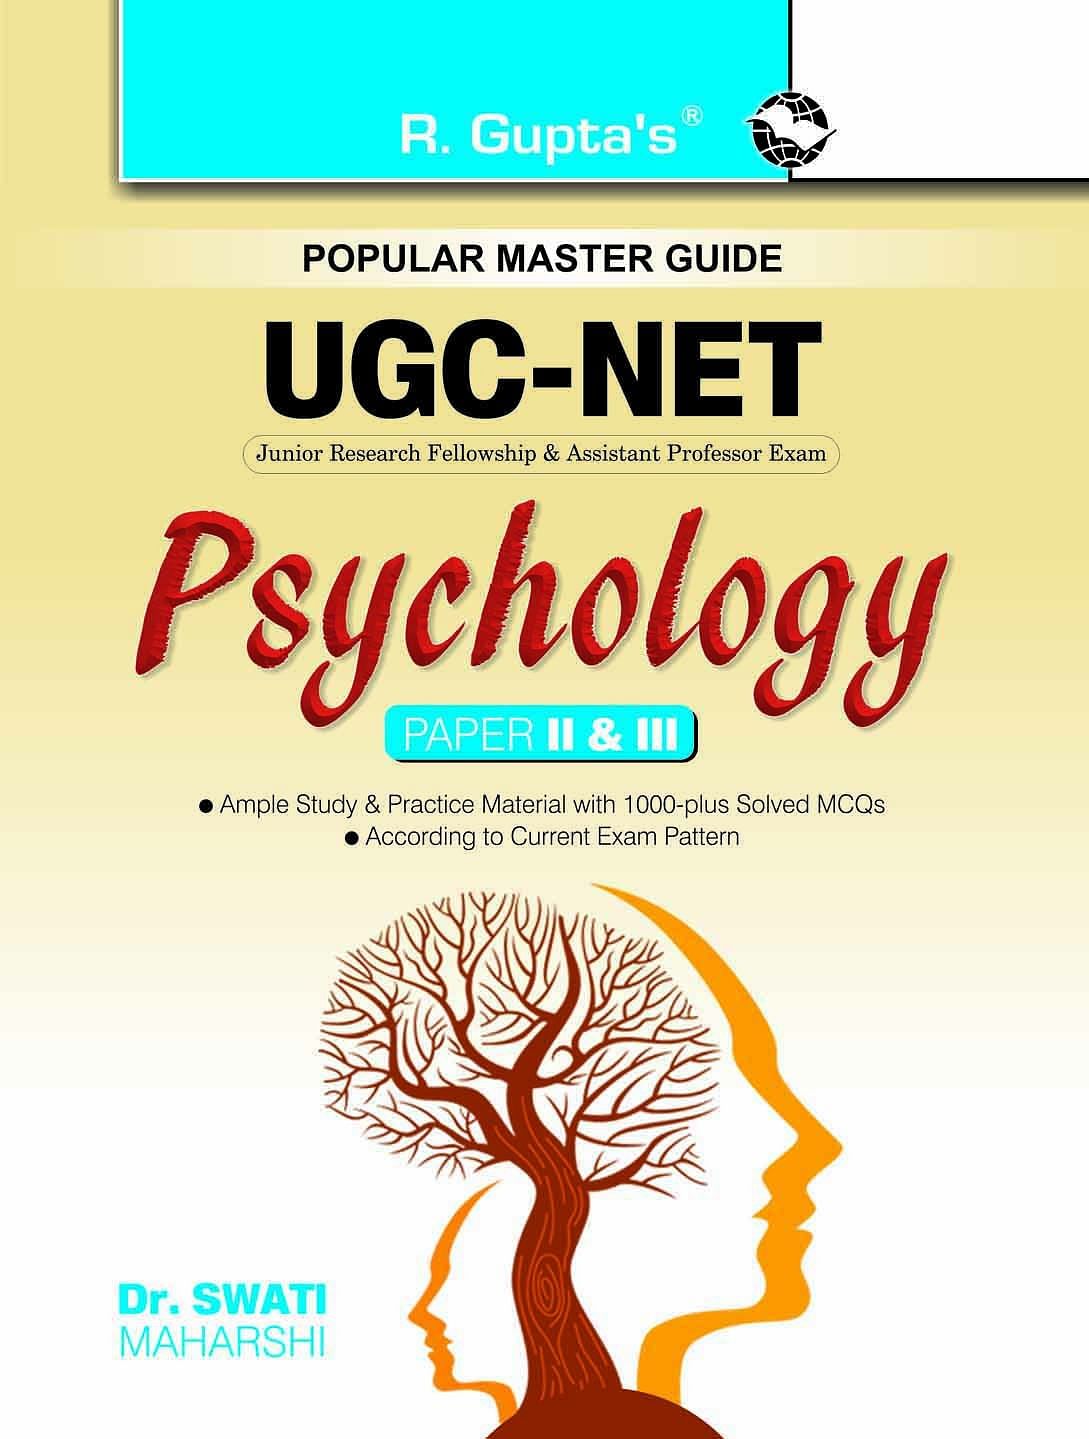 UGC-NET/SET Psychology JRF and Asstt. Professor (Paper II & III) Exam Guide